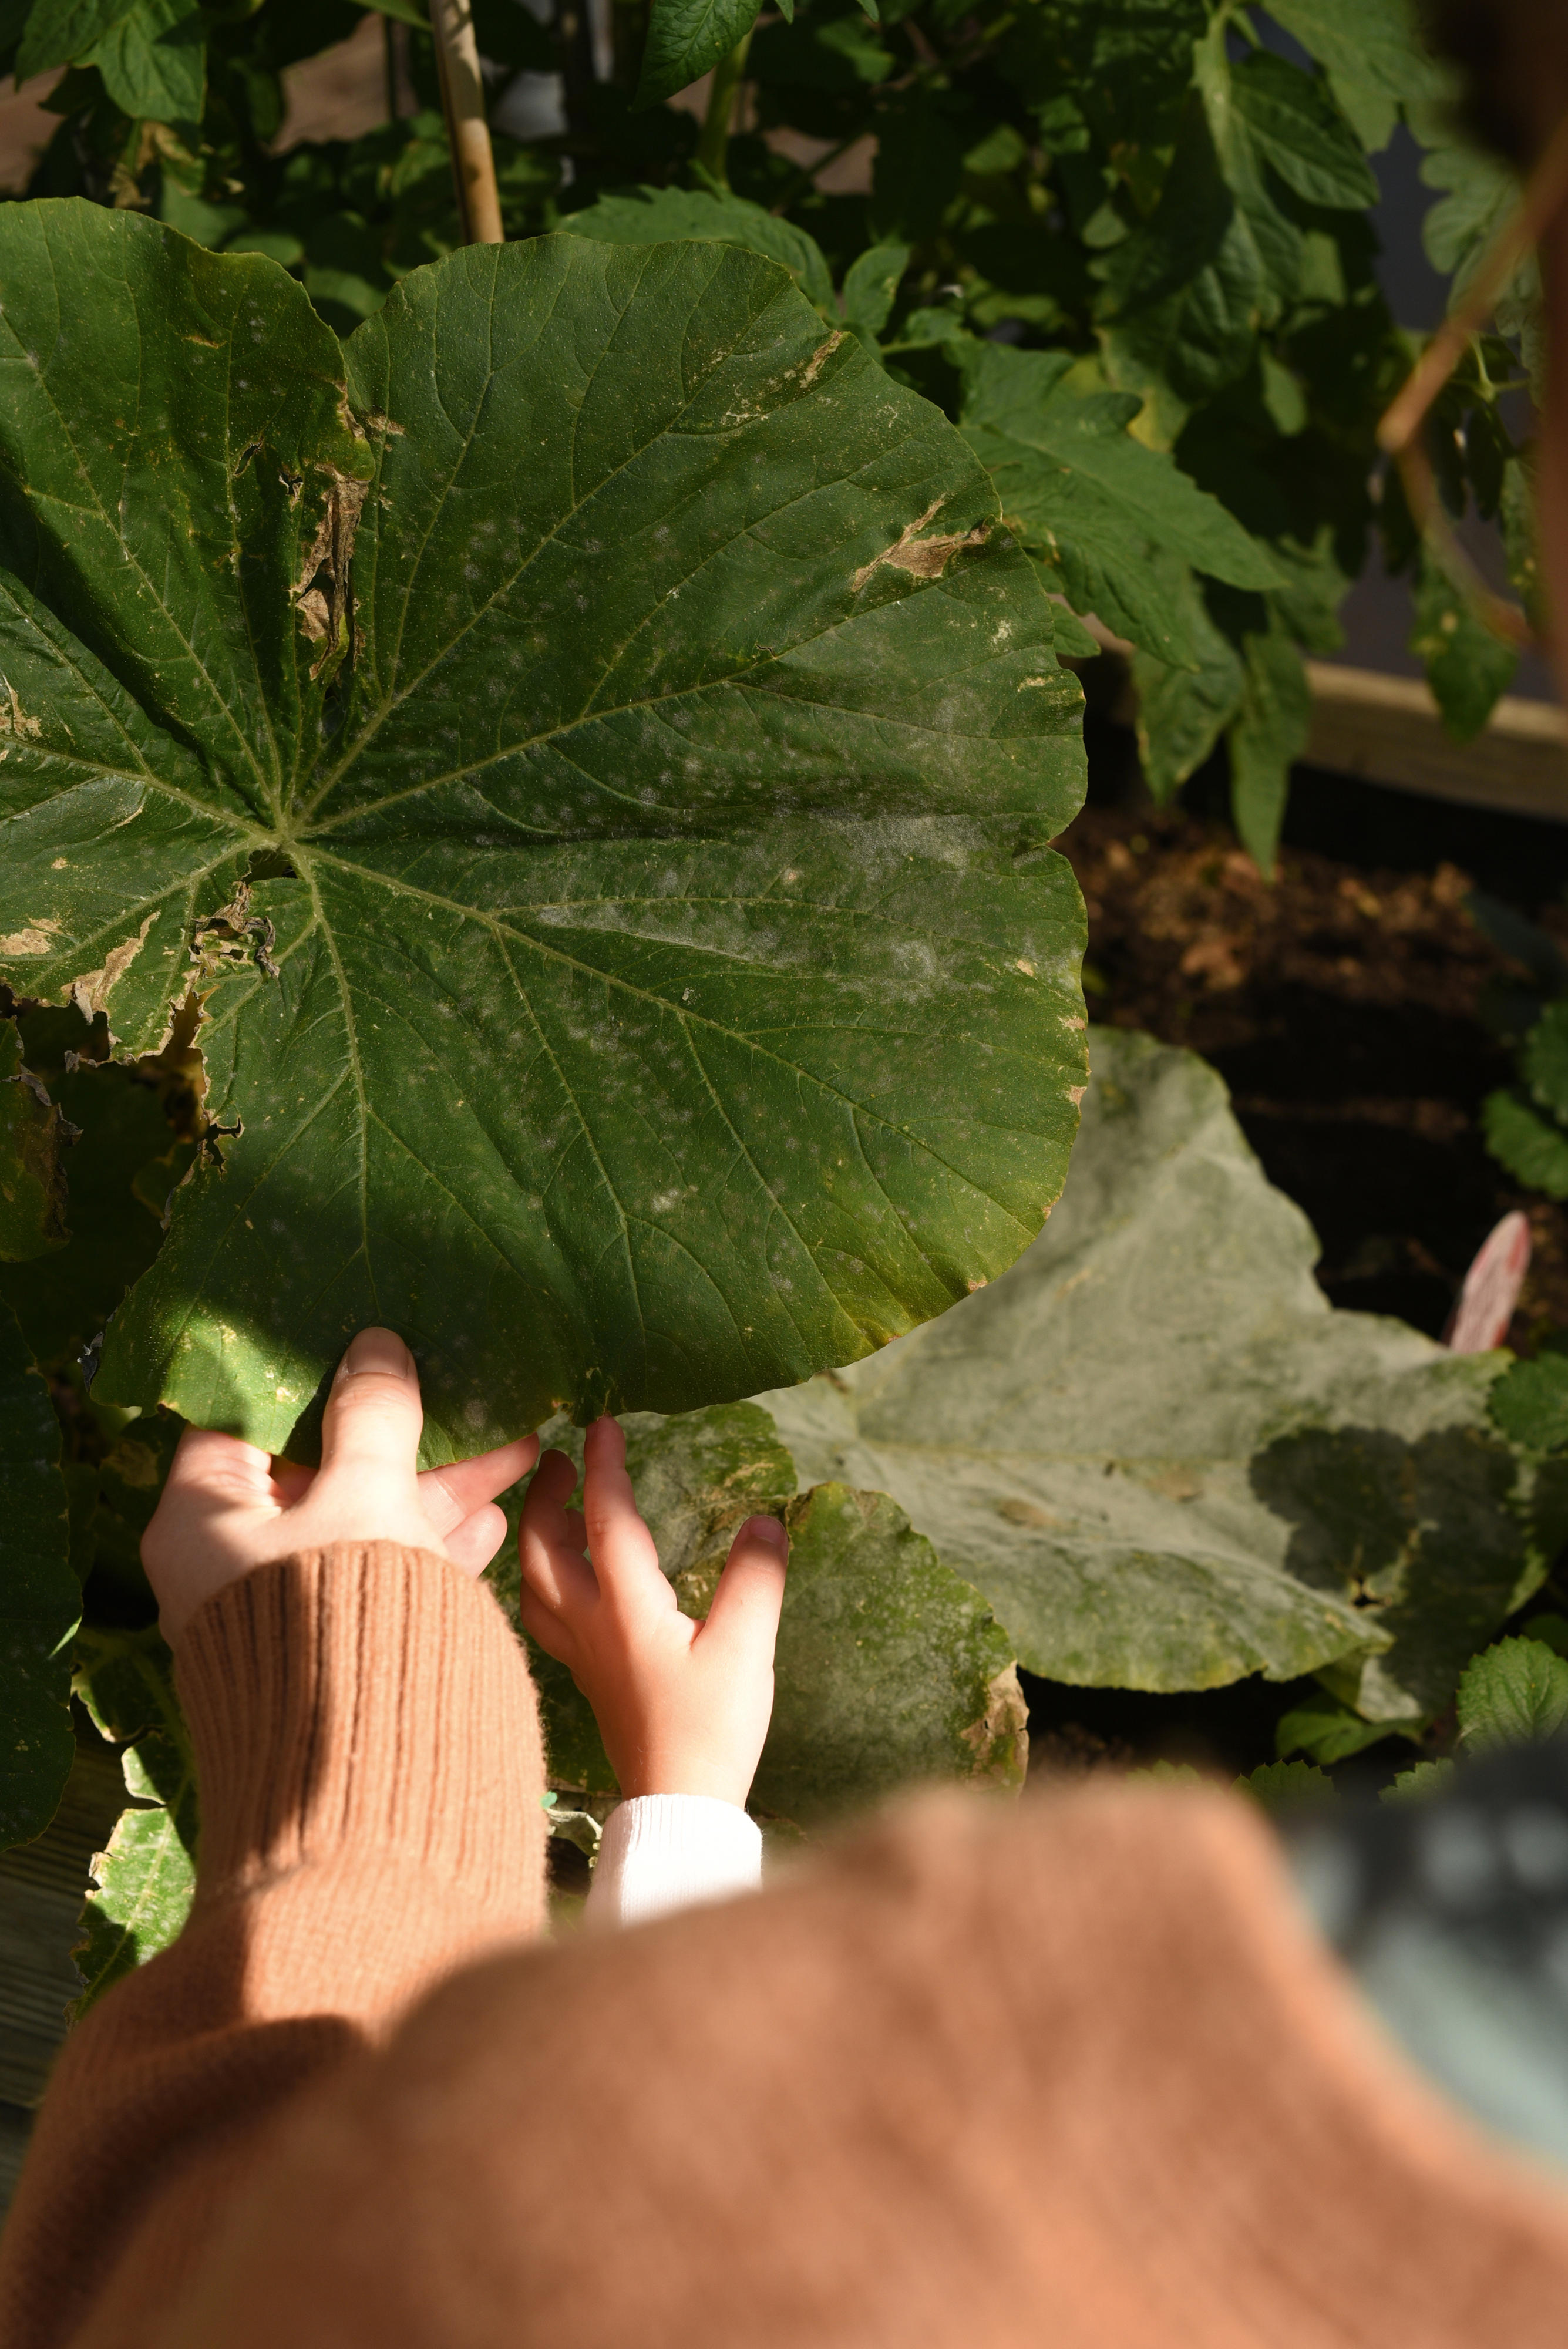 Eine Erwachsenen- und eine Kinderhand fassen ein großes grünes Blatt an.